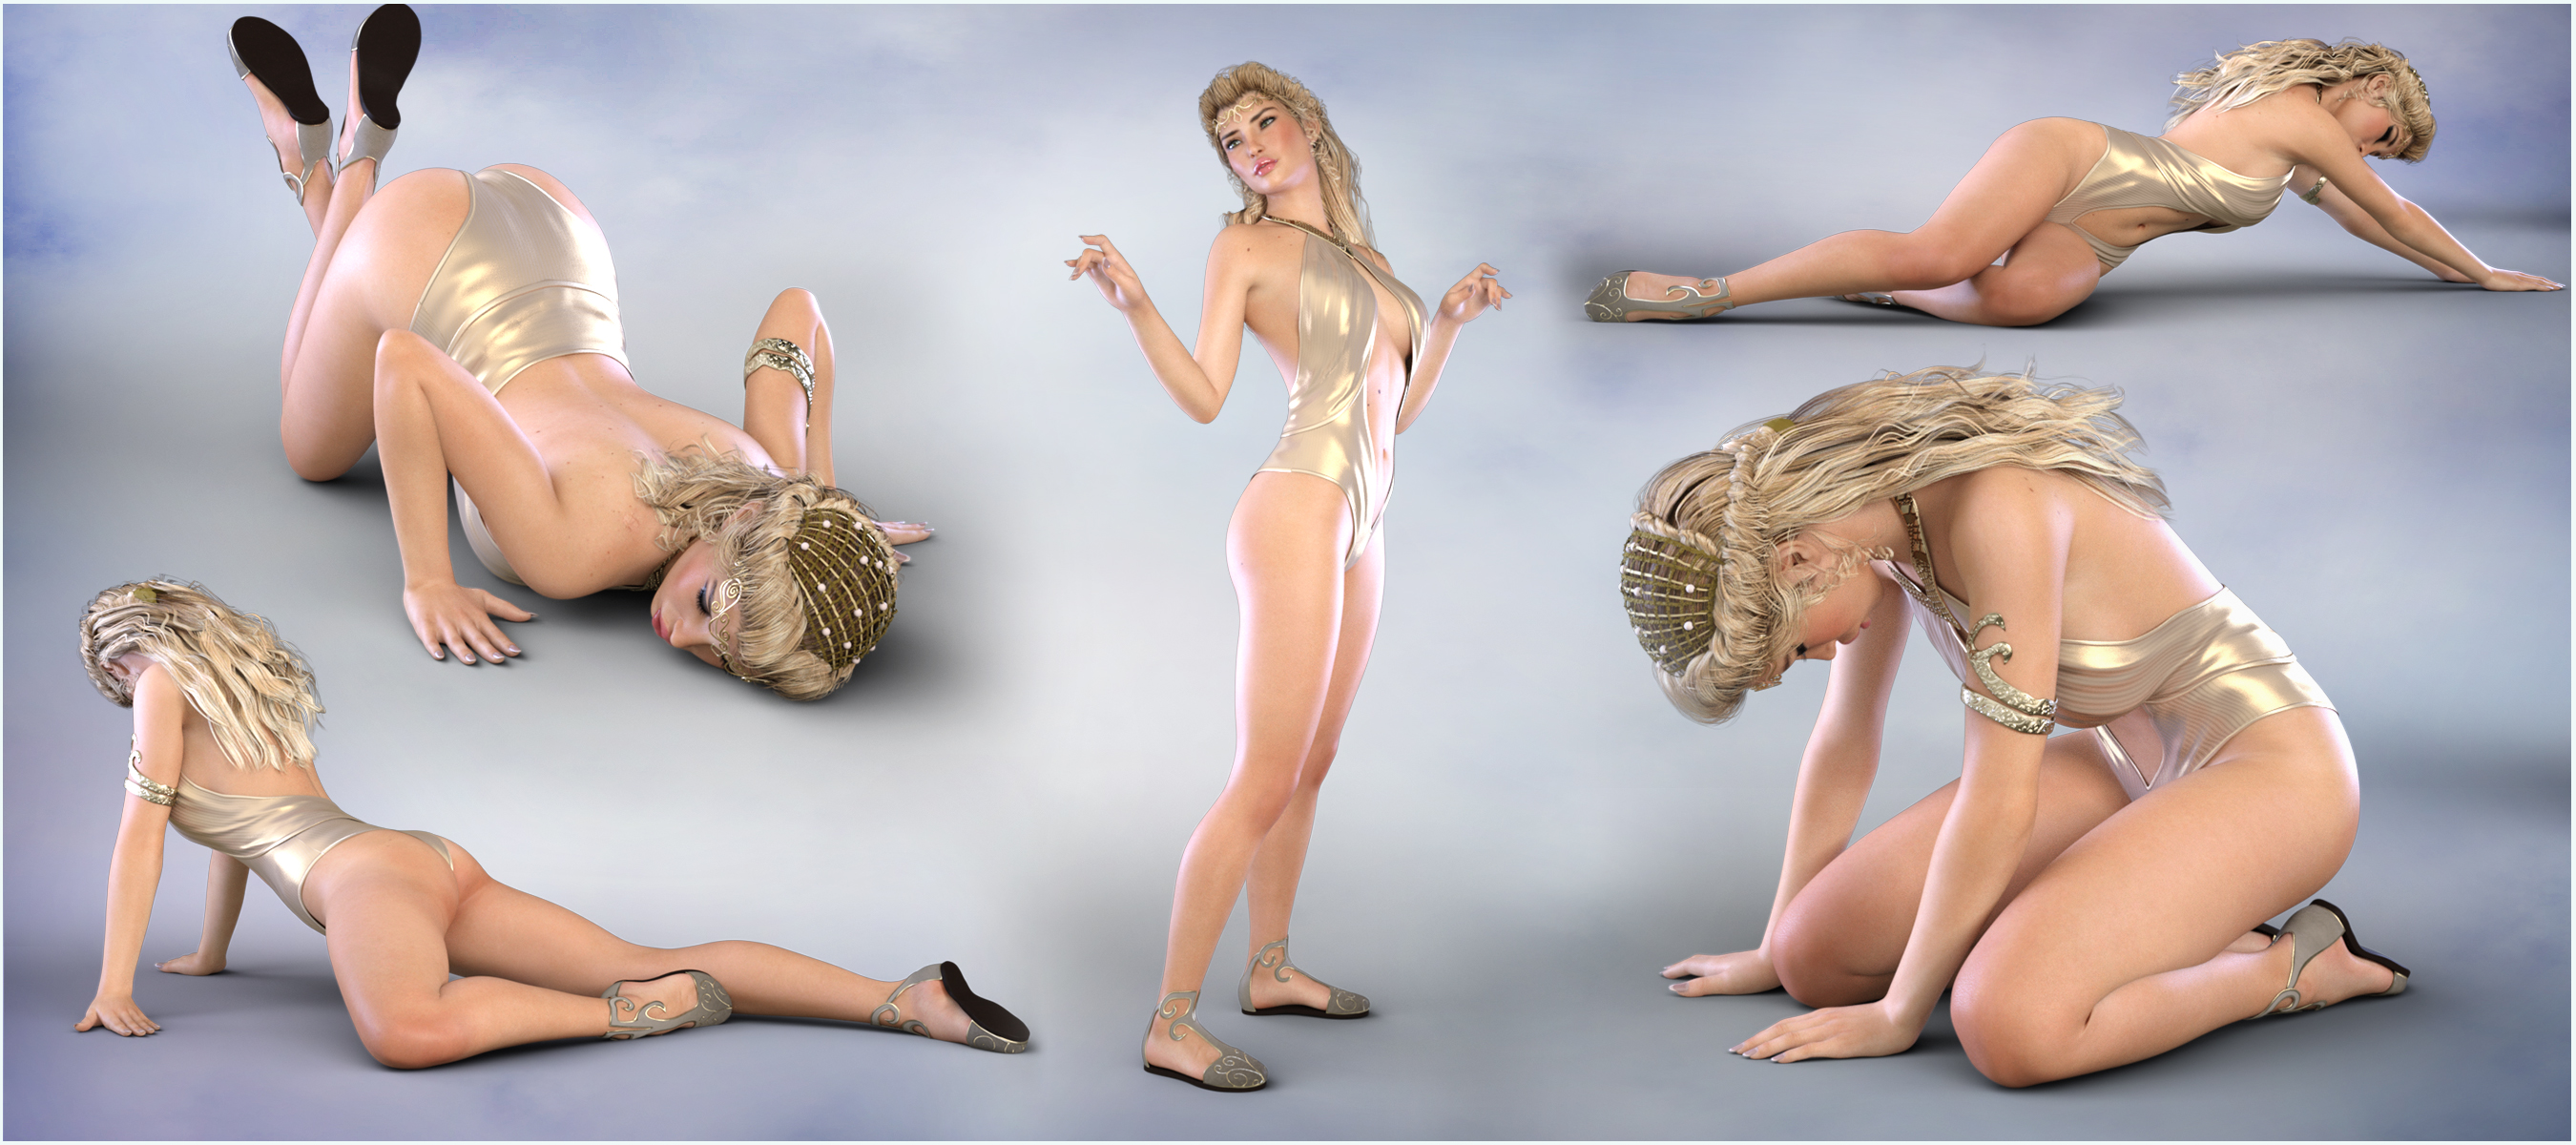 Z Fallen Angel - Poses for the Genesis 3 Female(s) by: Zeddicuss, 3D Models by Daz 3D